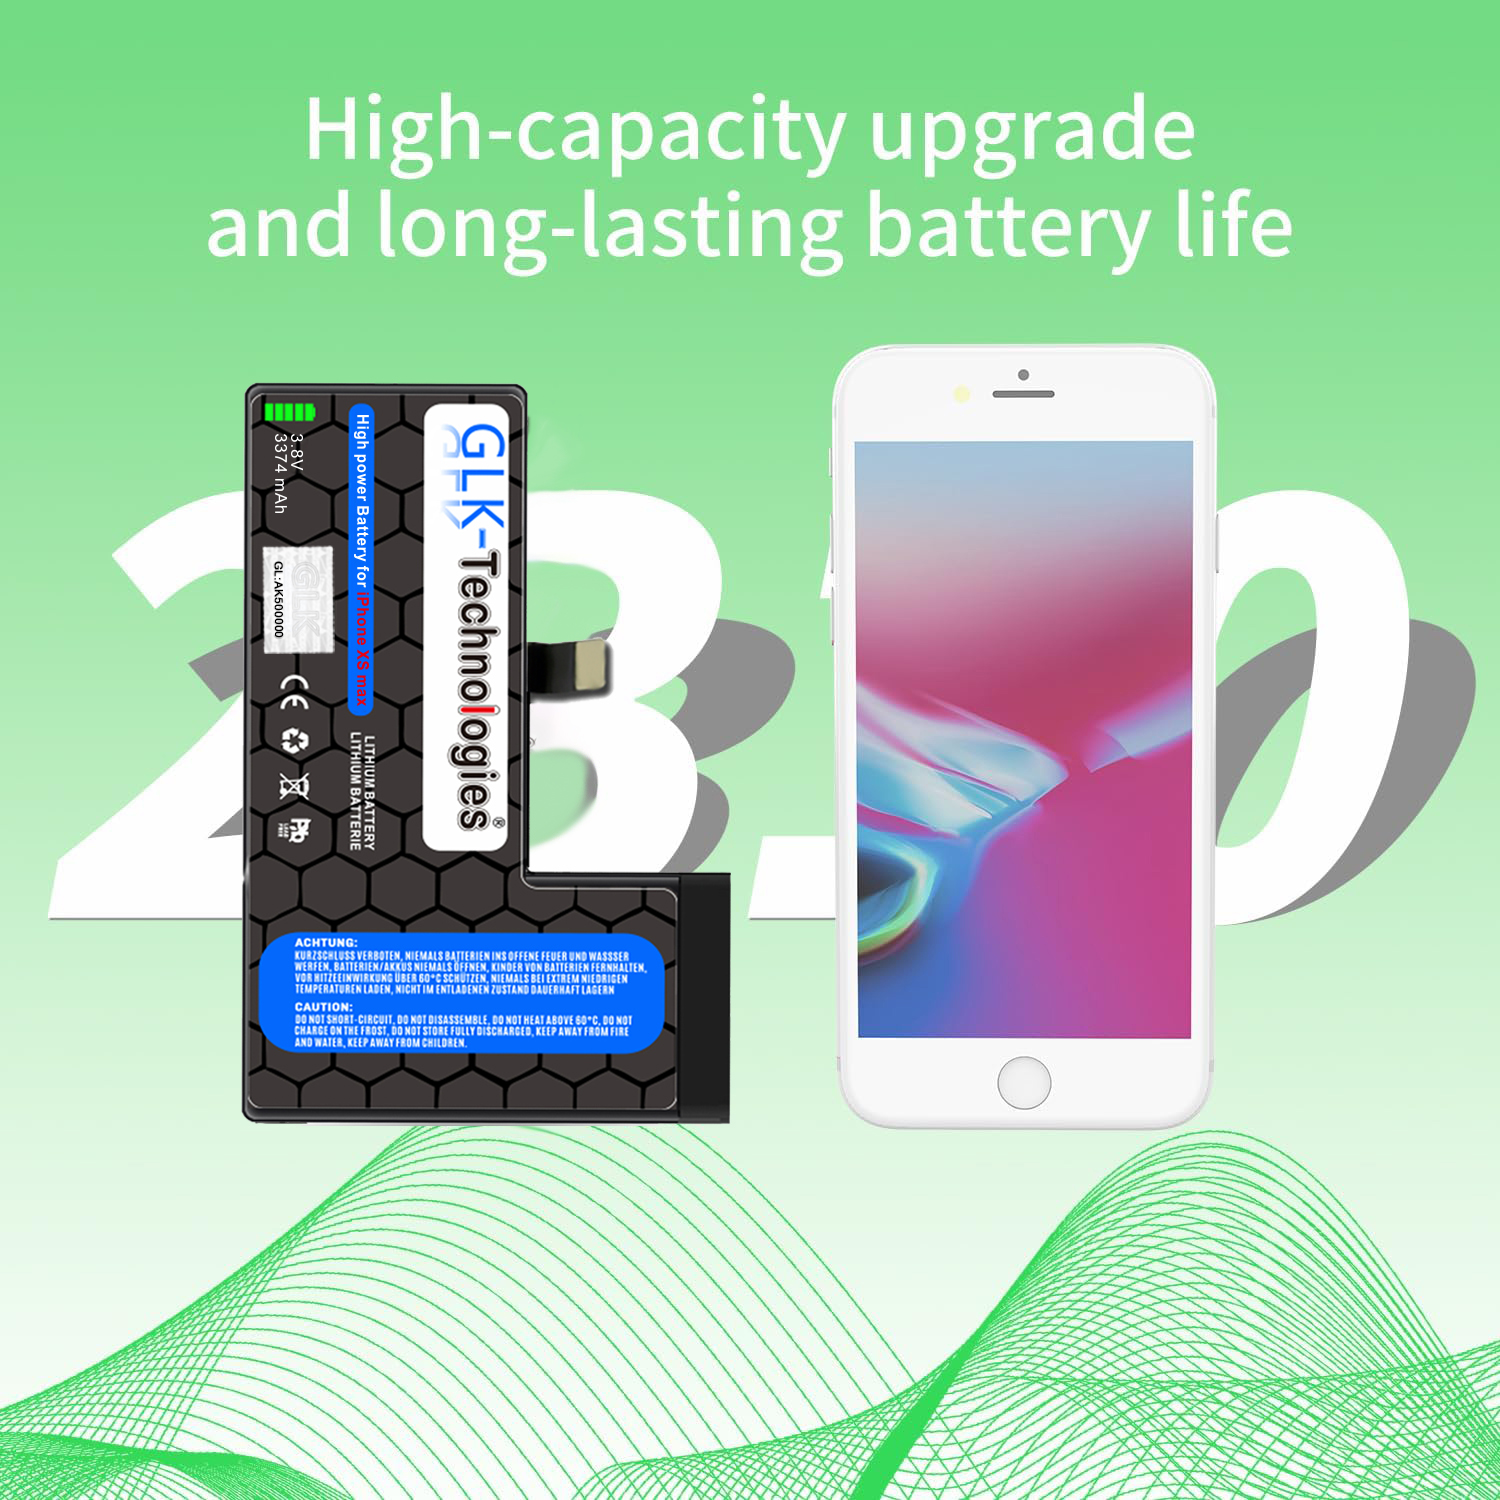 inkl. Lithium-Ionen-Akku MAX Smartphone XS mAh Werkzeug Ersatz Akku, iPhone 2930 GLK-TECHNOLOGIES PROFI